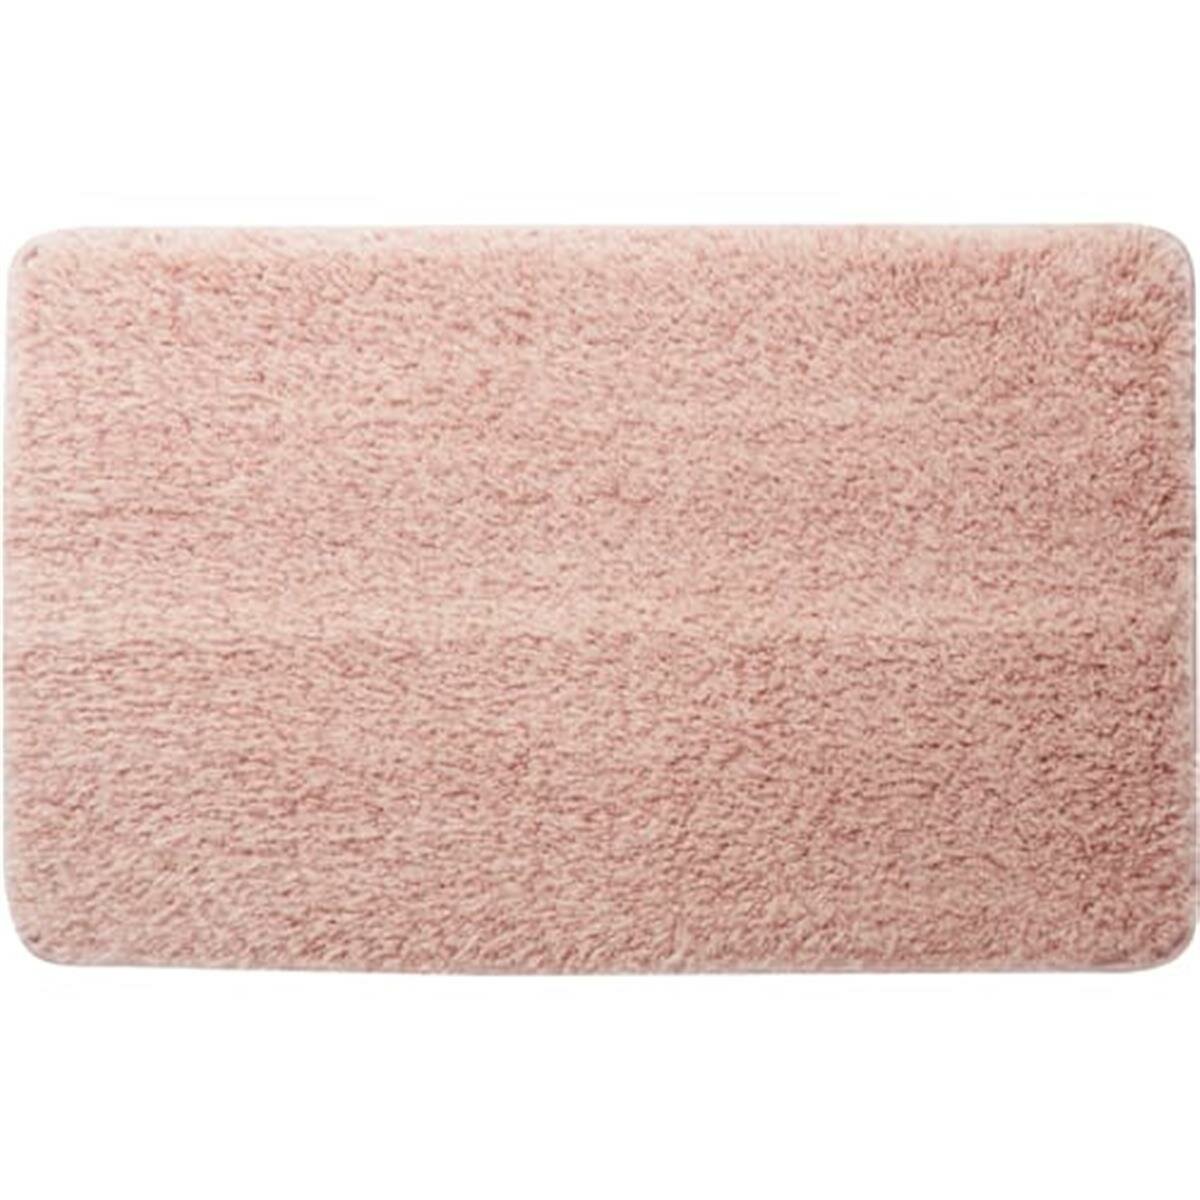 Коврик для ванной комнаты 50x80 см цвет розовый